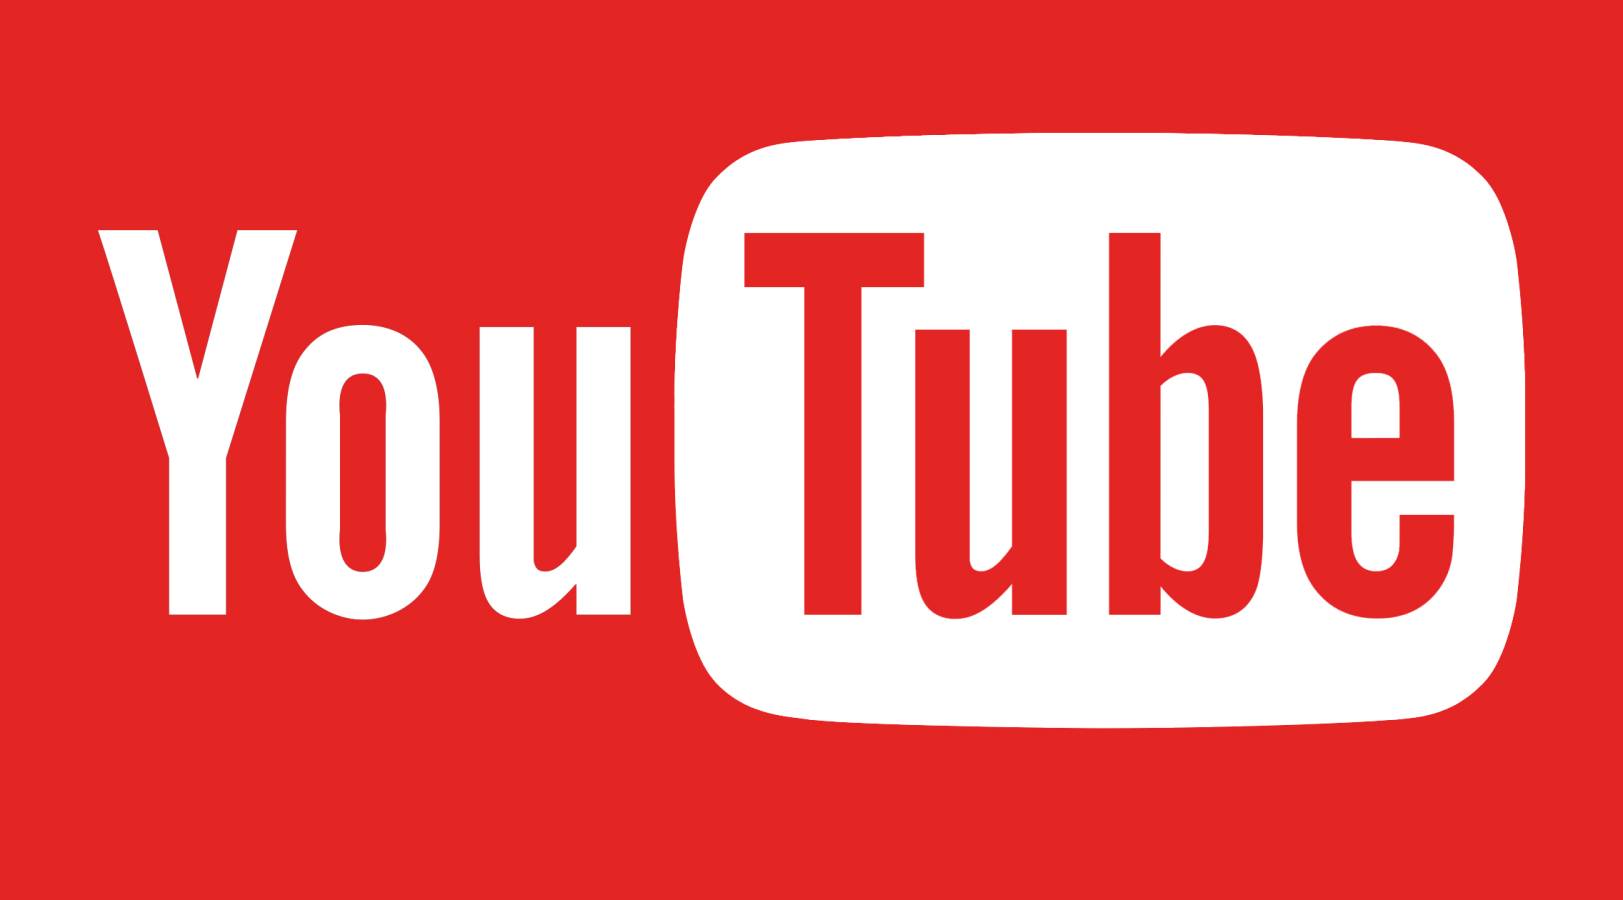 YouTuben uusi päivitys, mitä muutoksia nyt tarjotaan